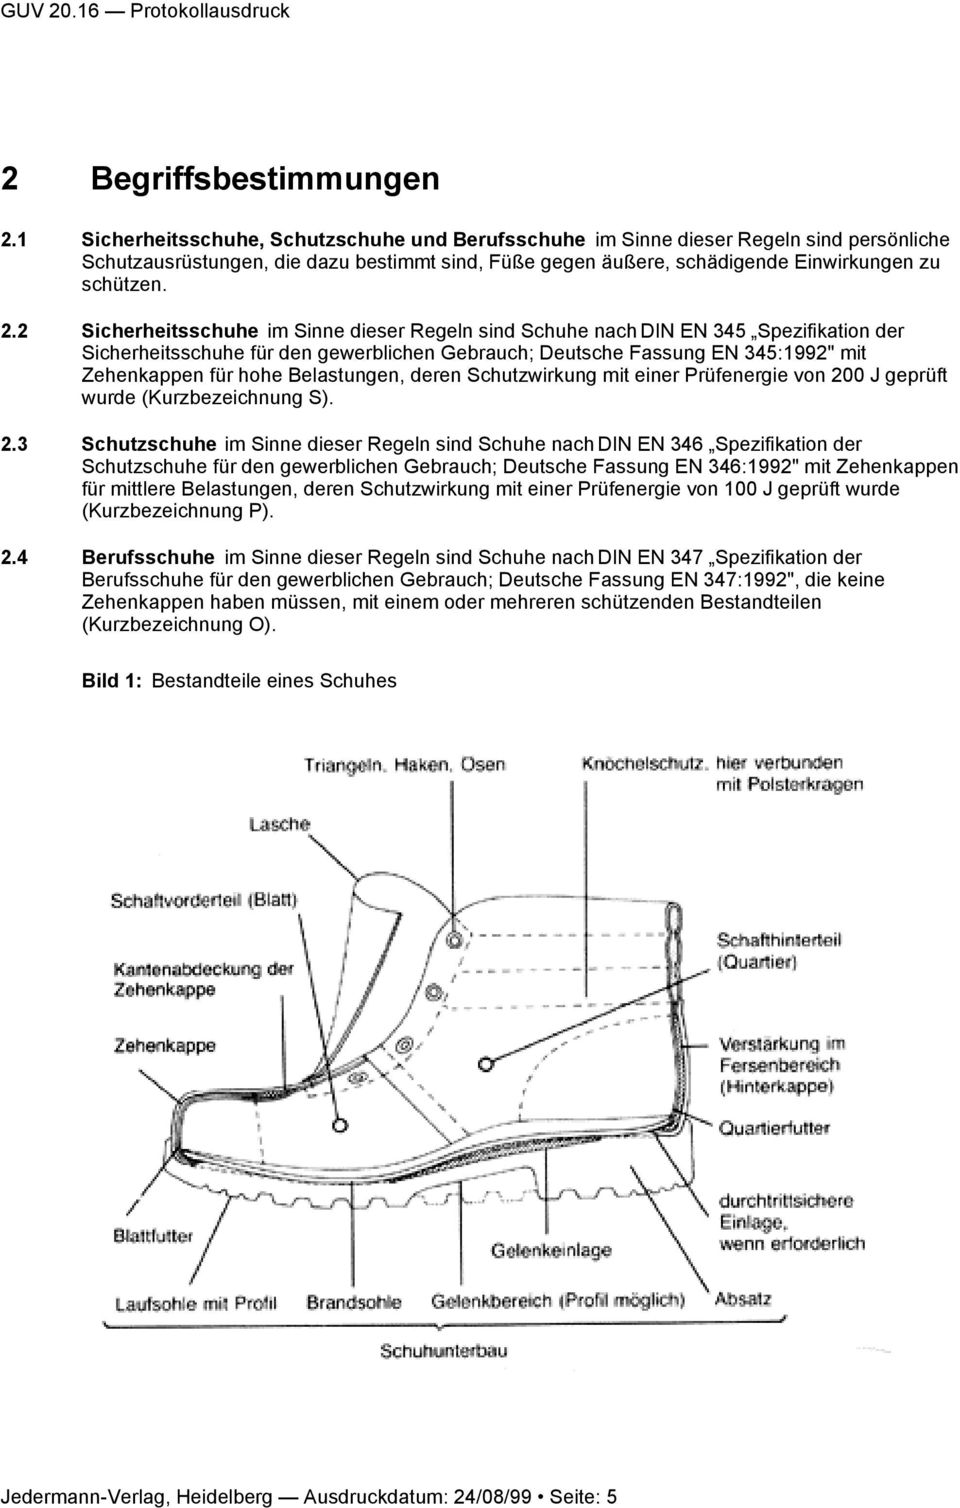 2 Sicherheitsschuhe im Sinne dieser Regeln sind Schuhe nach DIN EN 345 Spezifikation der Sicherheitsschuhe für den gewerblichen Gebrauch; Deutsche Fassung EN 345:1992" mit Zehenkappen für hohe